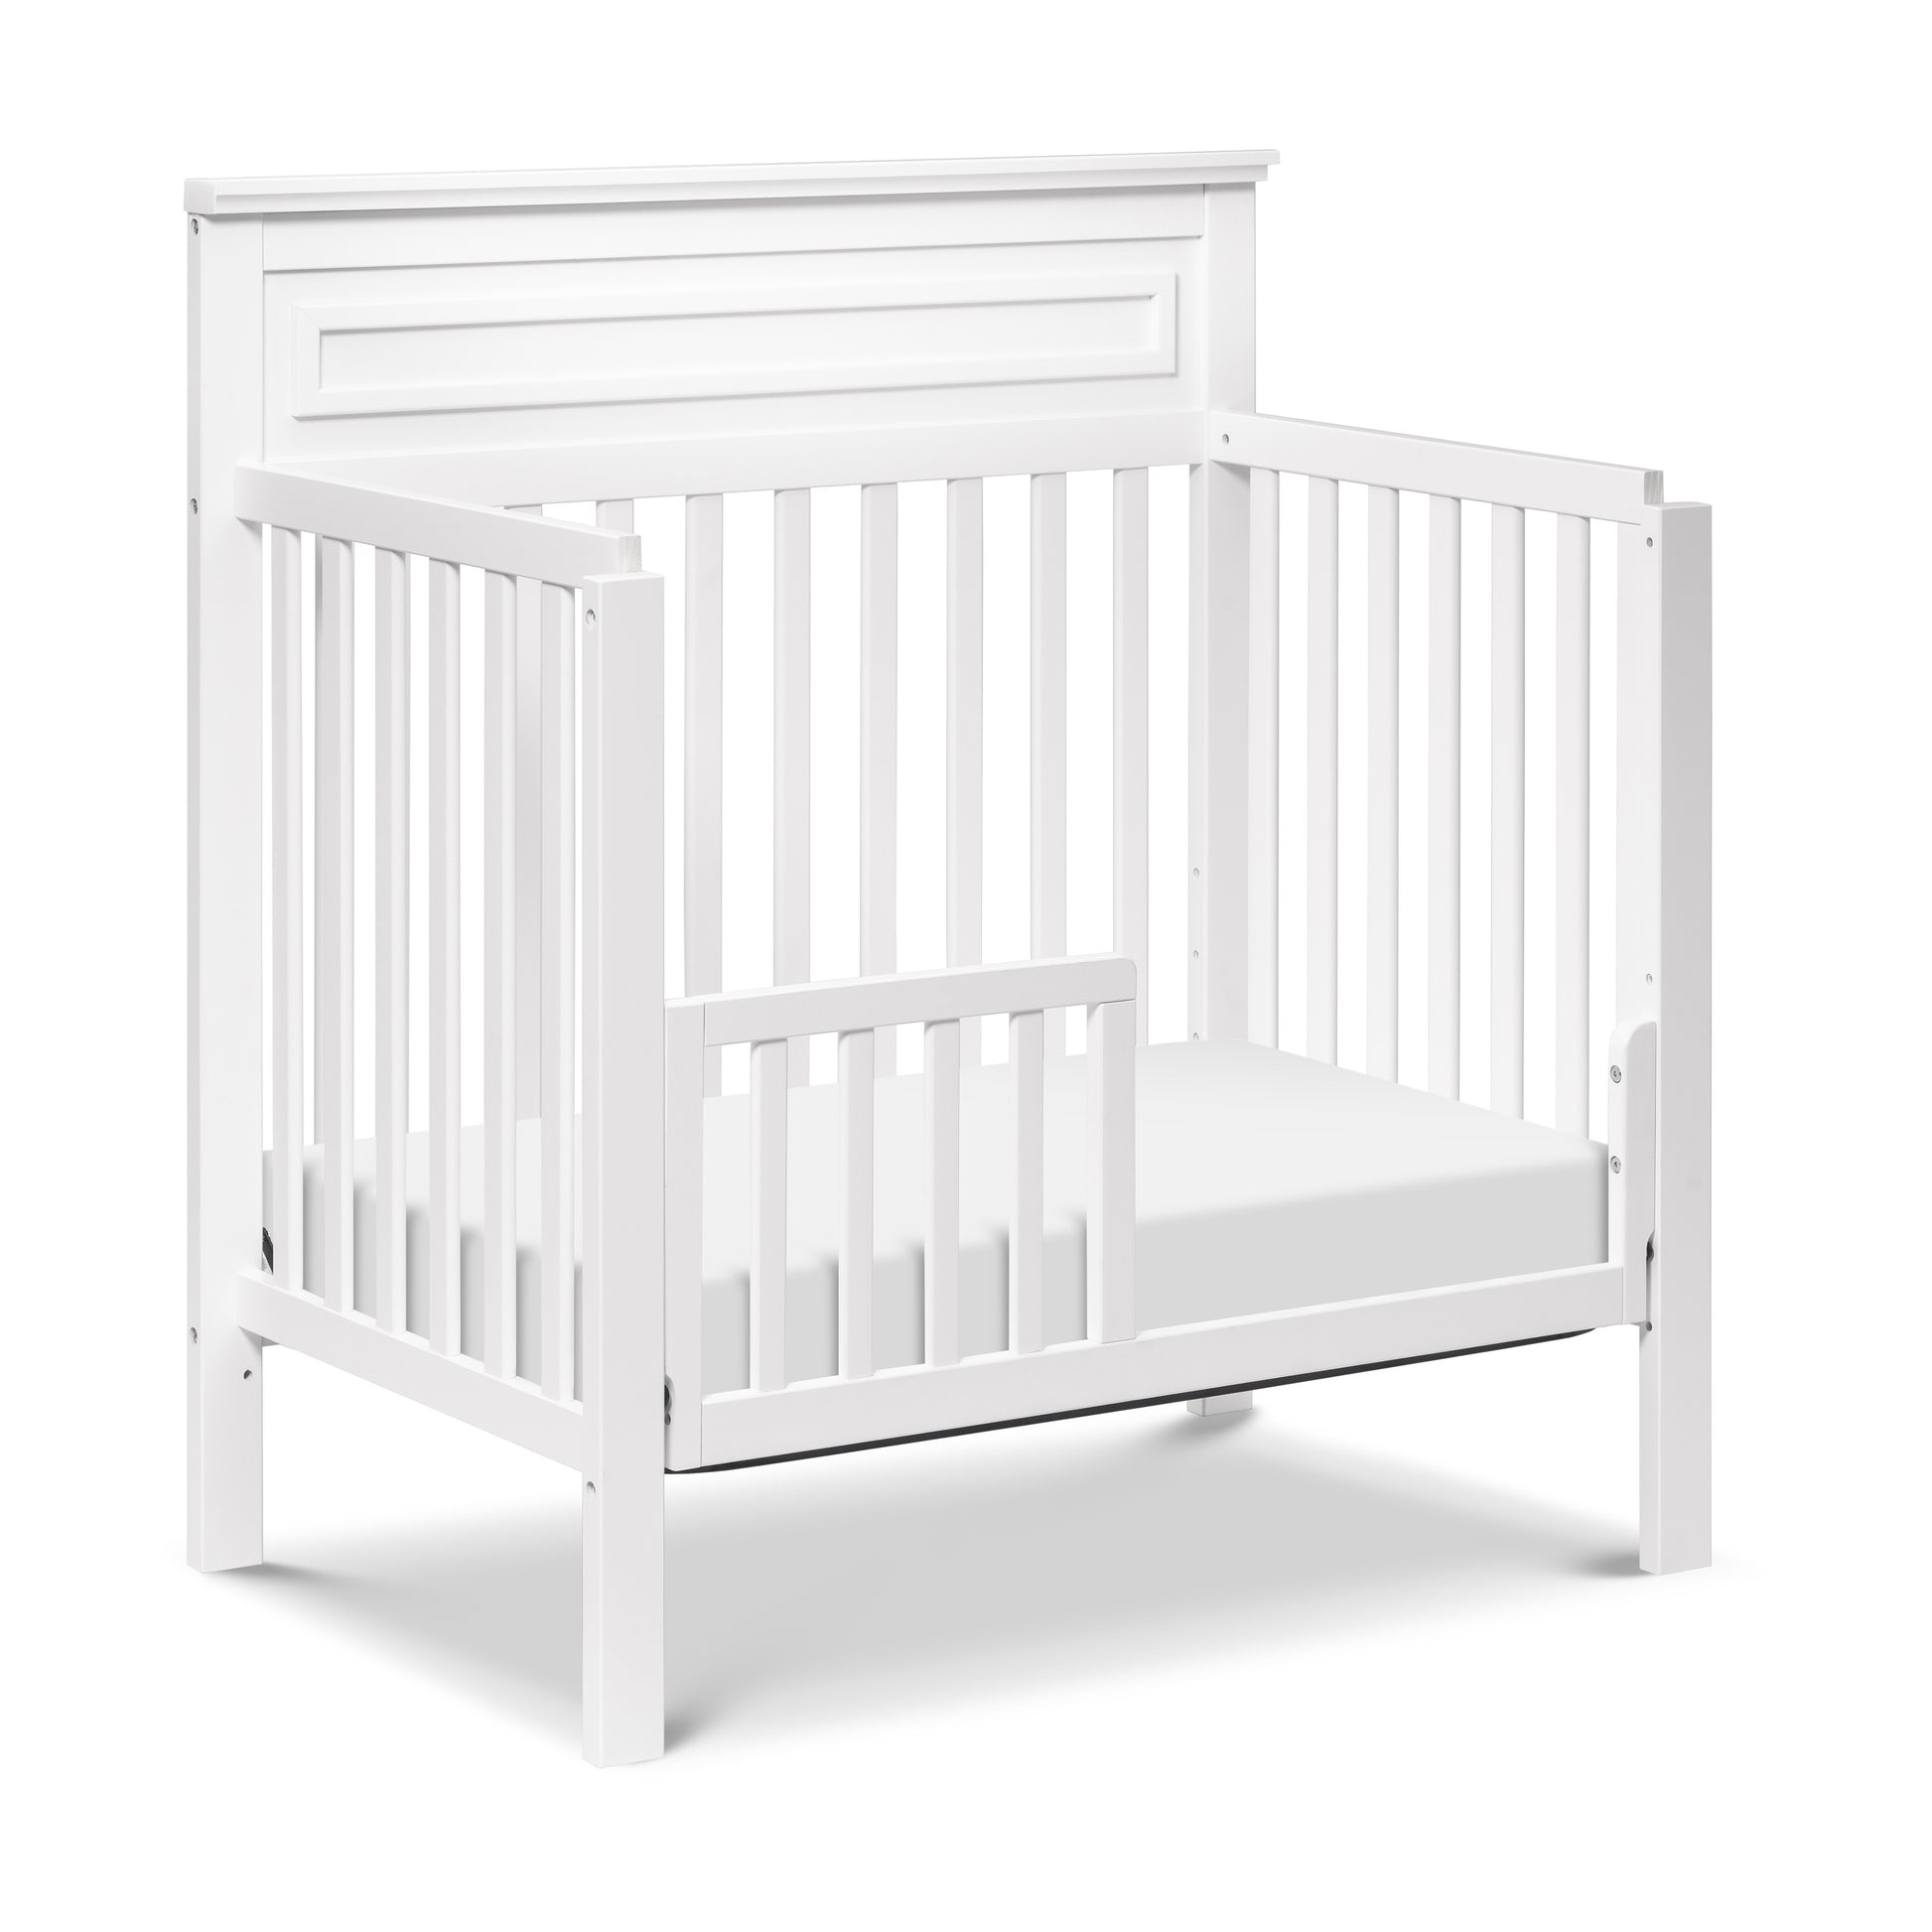 M4398W,Autumn 4-in-1 Convertible Mini Crib in White